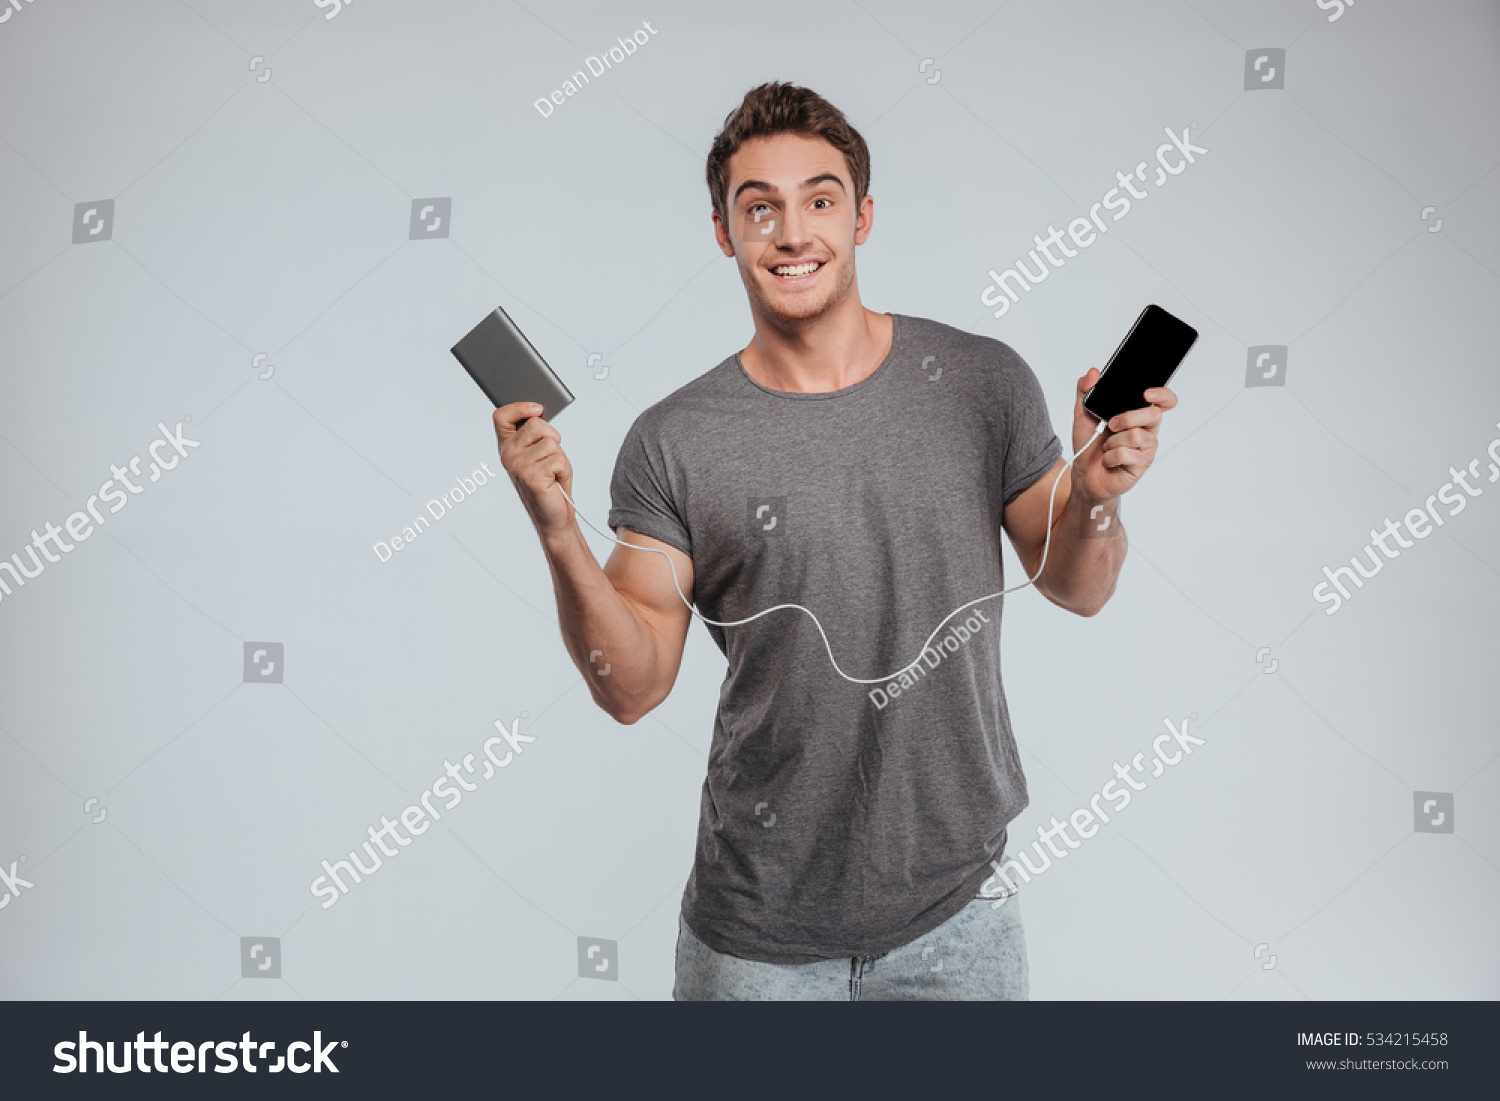 Standing o. Мужчина со смартфоном. Человек с мобильным телефоном. Парень с телефоном в руке. Радостный человек с телефоном.